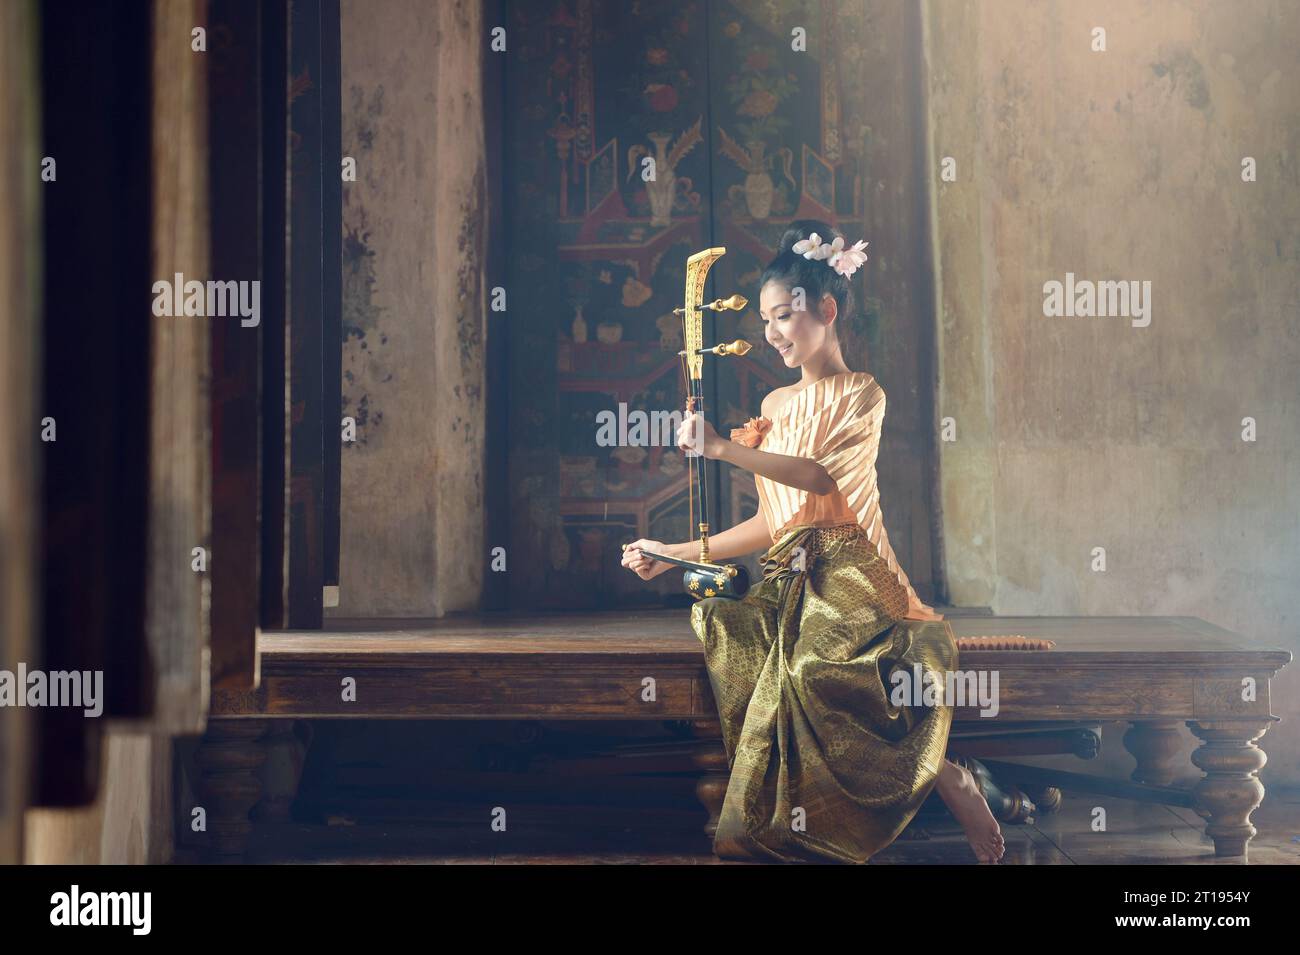 Femme en vêtements traditionnels jouant d'un instrument à cordes thaïlandais Saw Duang, Thaïlande Banque D'Images